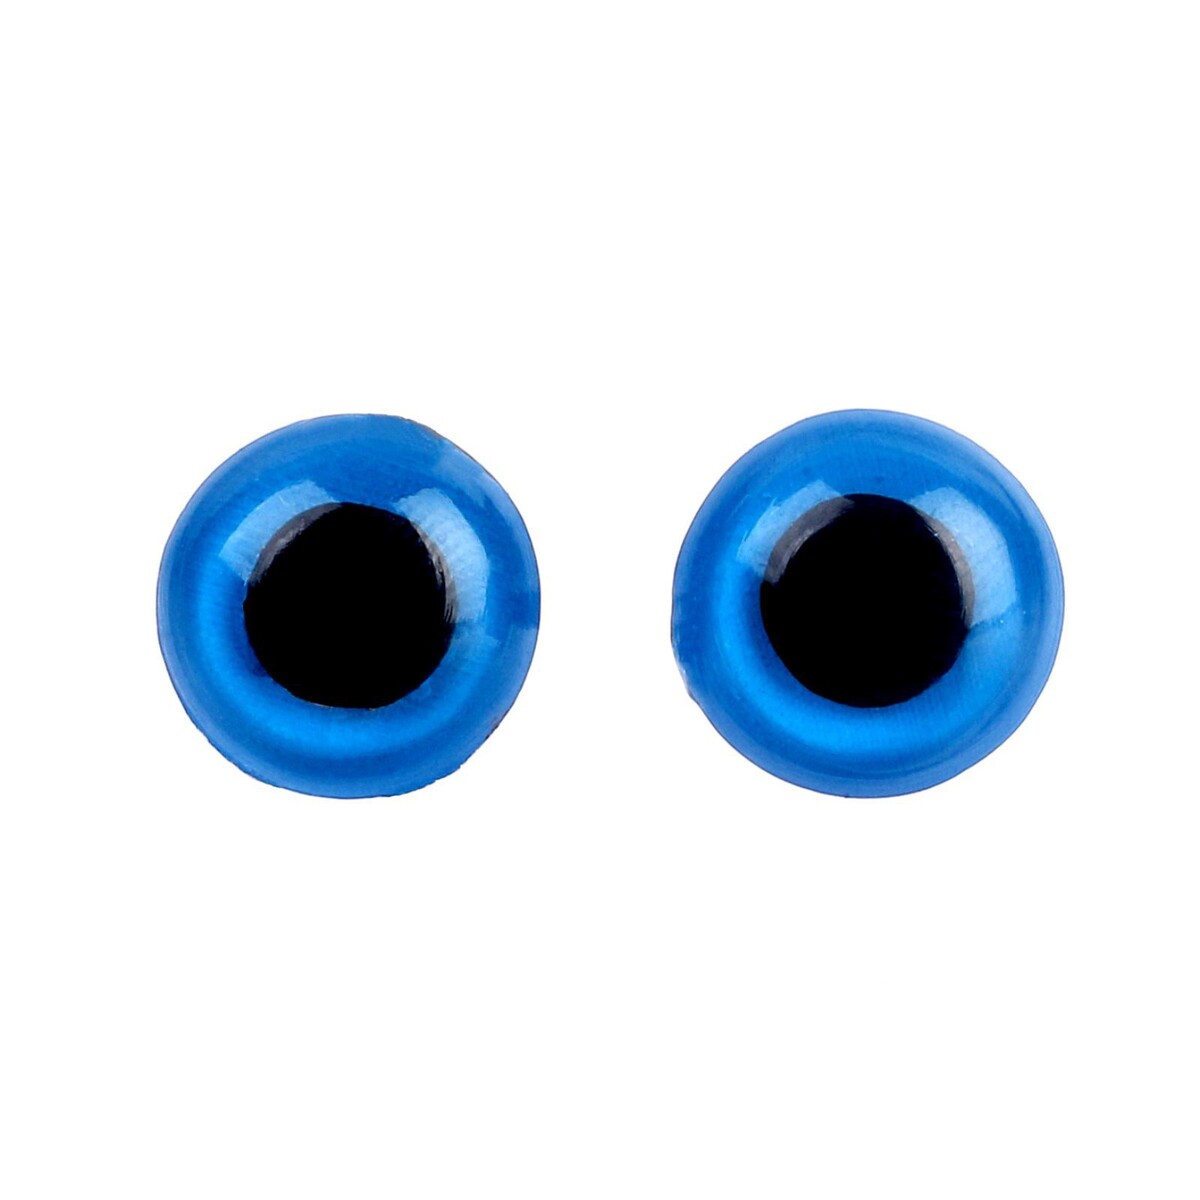 Глаза винтовые с заглушками, полупрозрачные, набор 4 шт, цвет голубой, размер 1 шт: 1×1 см глаза винтовые с заглушками полупрозрачные набор 4 шт голубой размер 1 шт 1×1 см